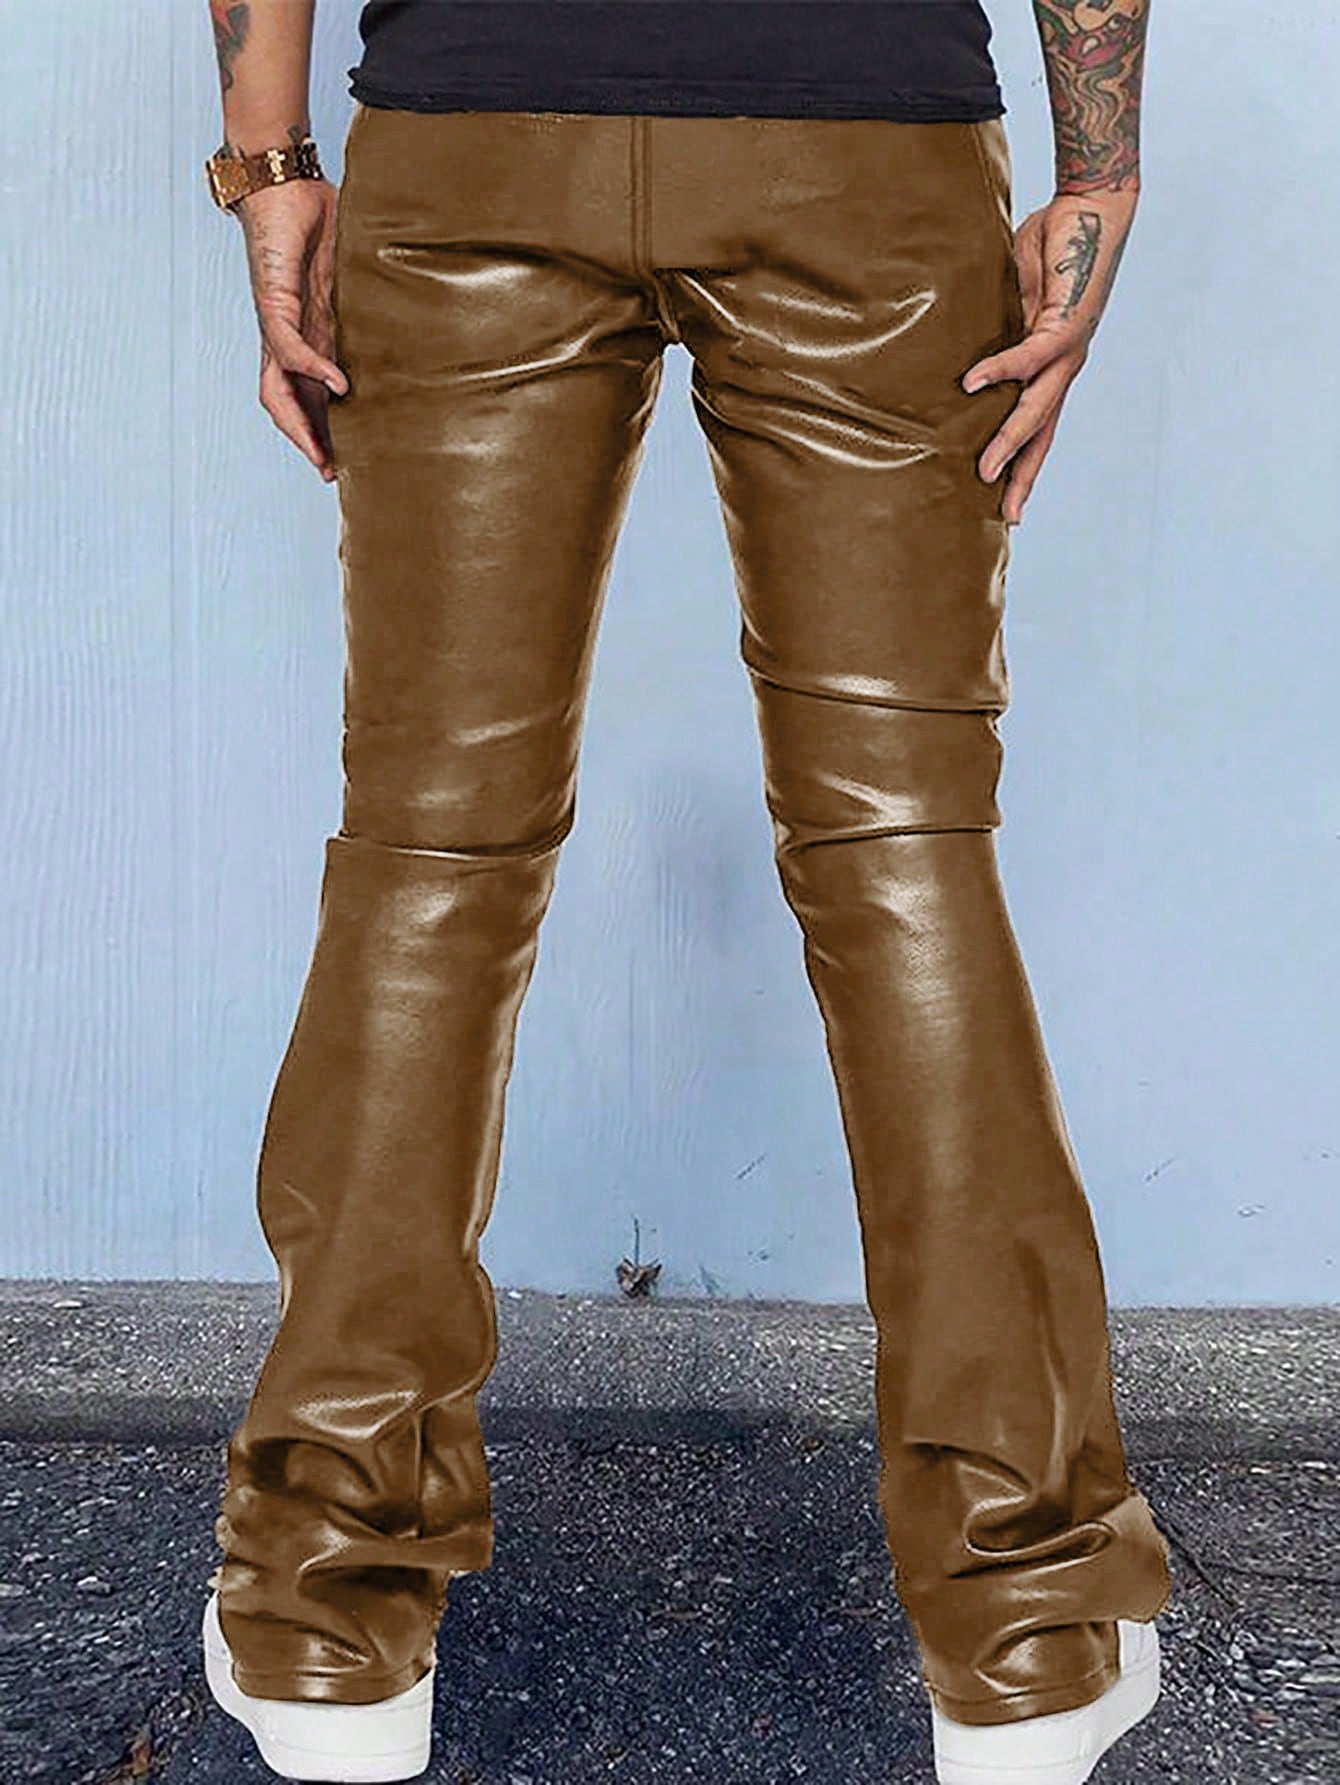 Мужские брюки с карманами и клапанами Manfinity EMRG, коричневый весенние модные мужские модные брюки из искусственной кожи в рок стиле мужские облегающие мотоциклетные брюки из искусственной кожи